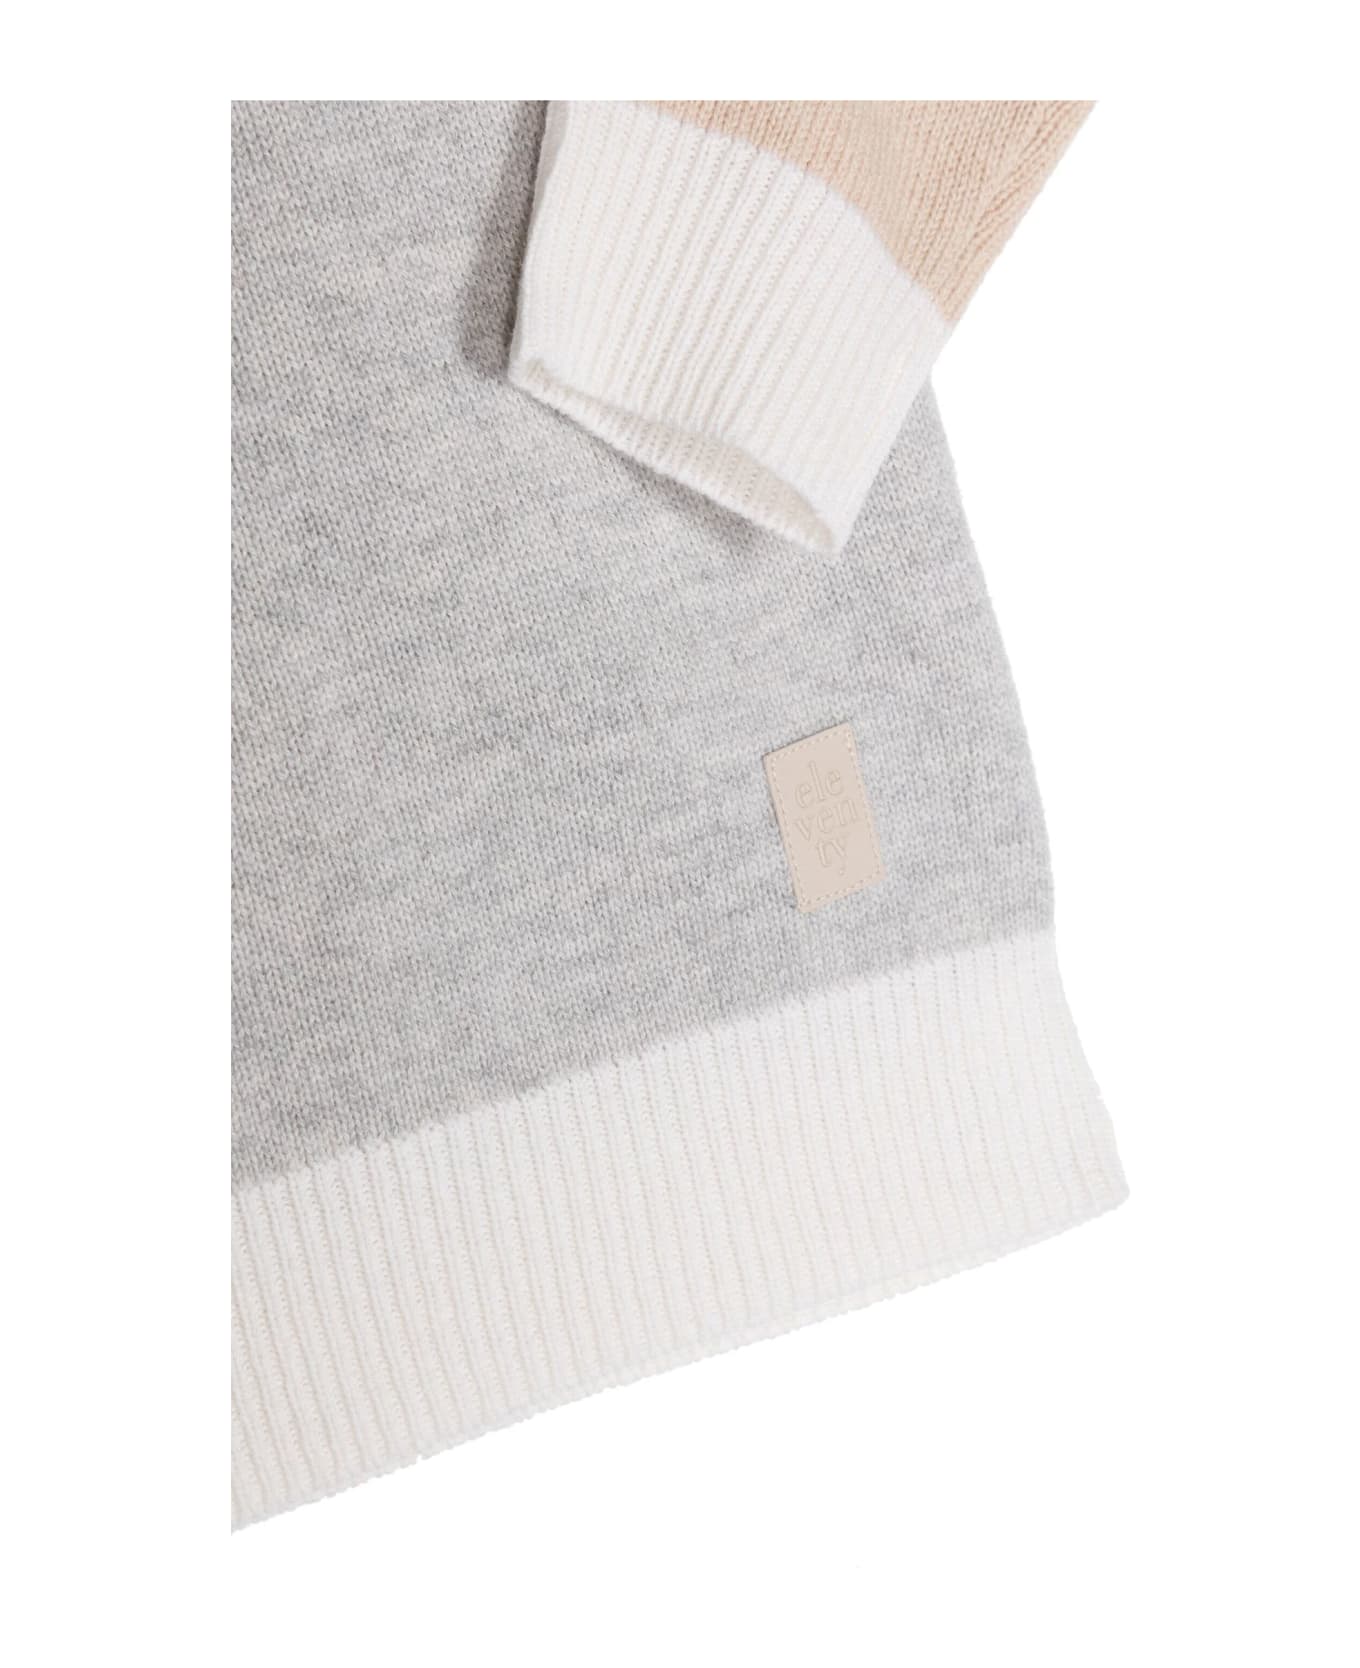 Eleventy Sweaters Grey - Grey ニットウェア＆スウェットシャツ